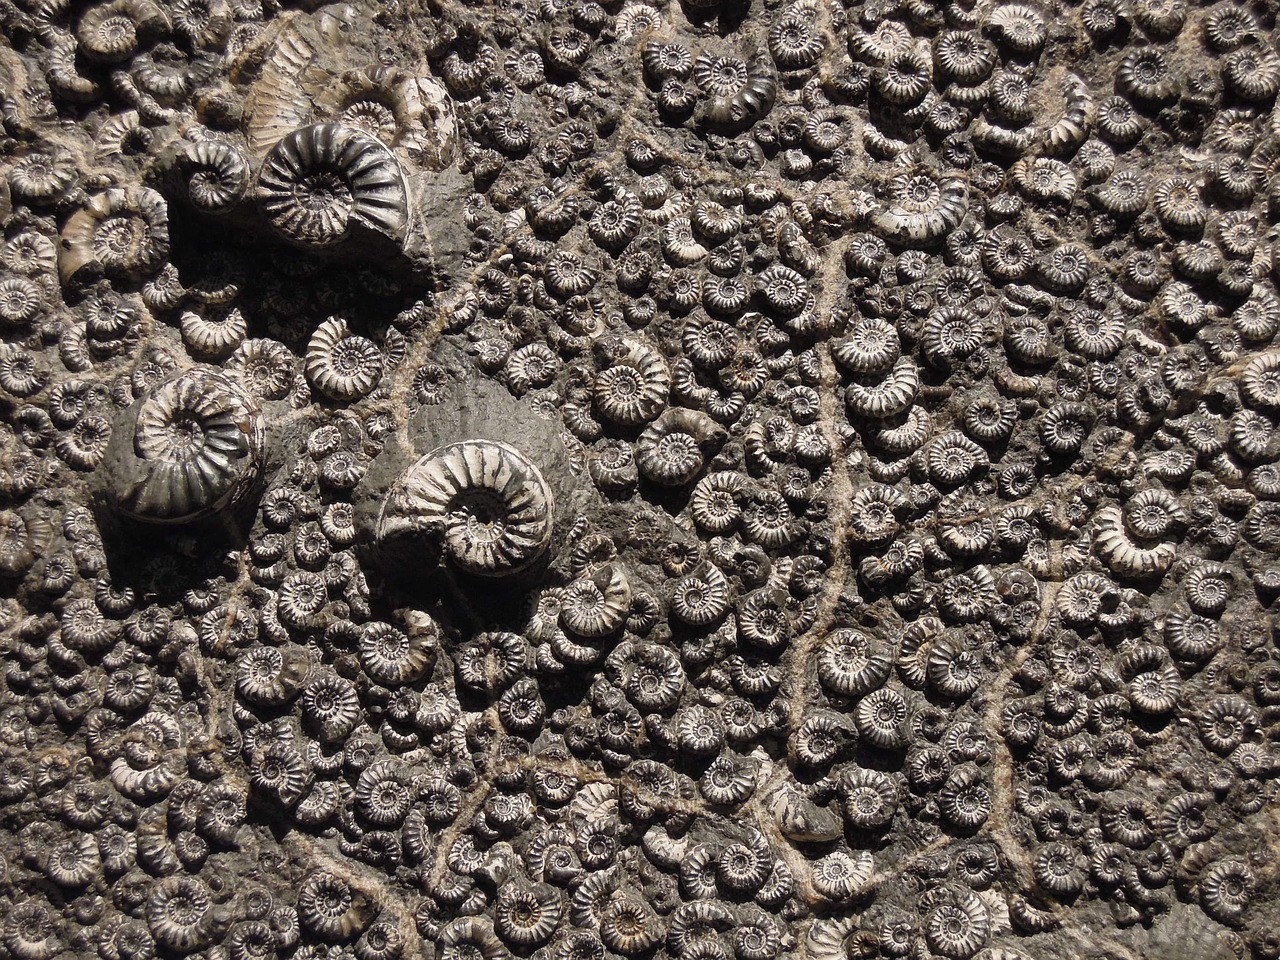  Ce fossile d’un milliard d’années pourrait être le plus ancien organisme multicellulaire